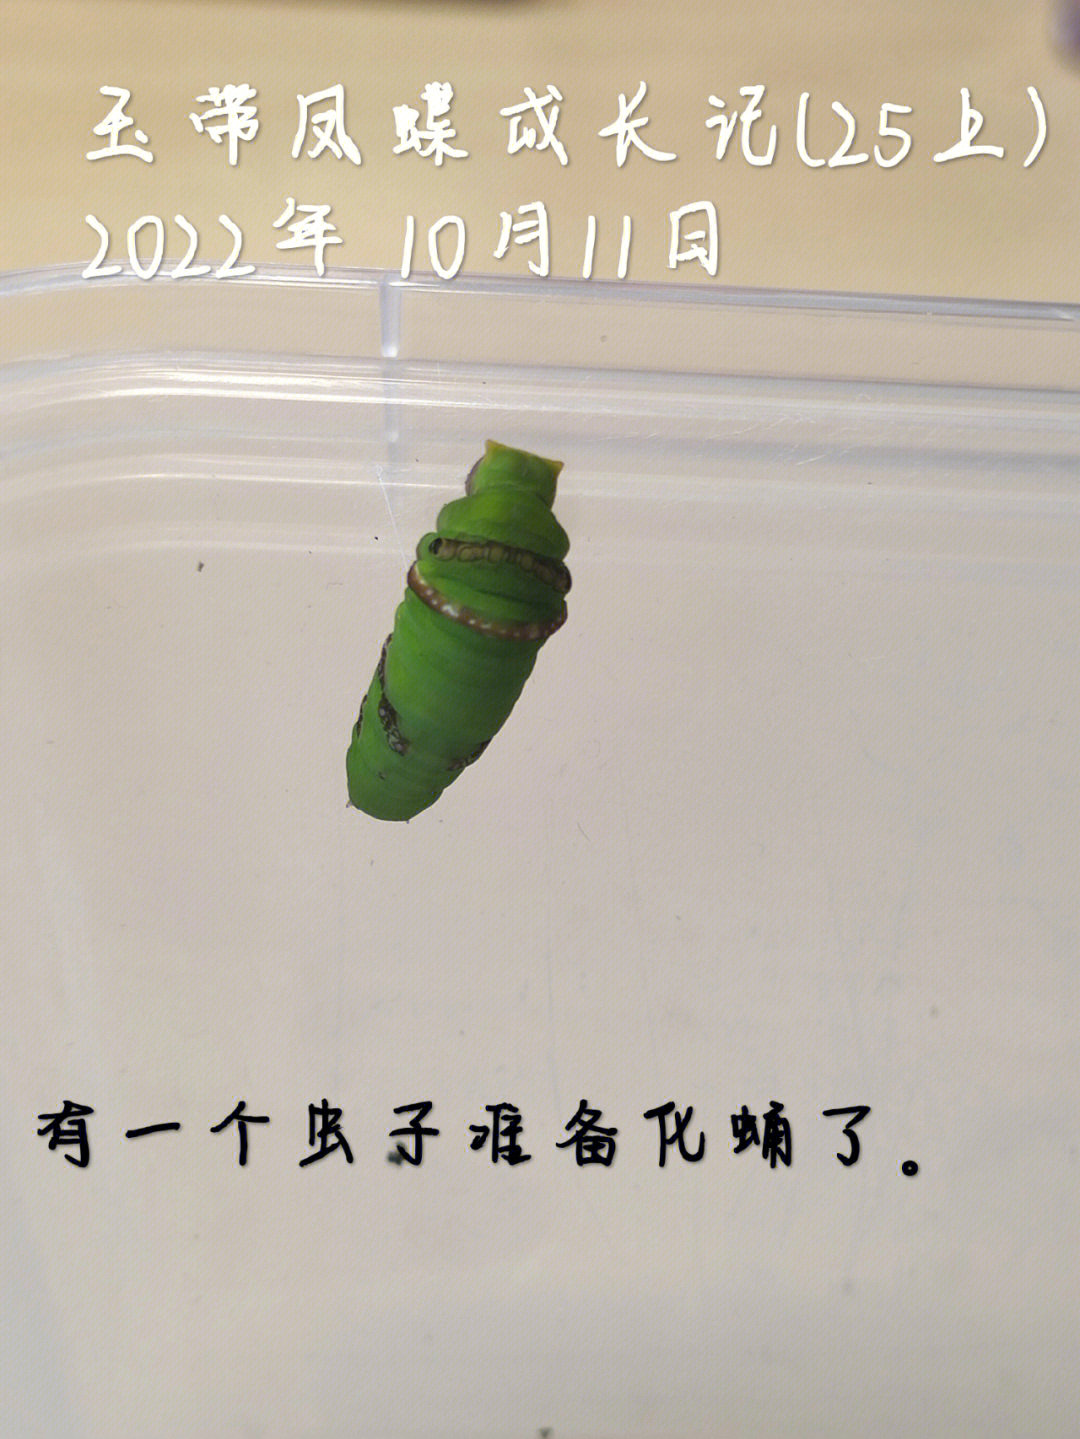 玉带凤蝶成长过程图片